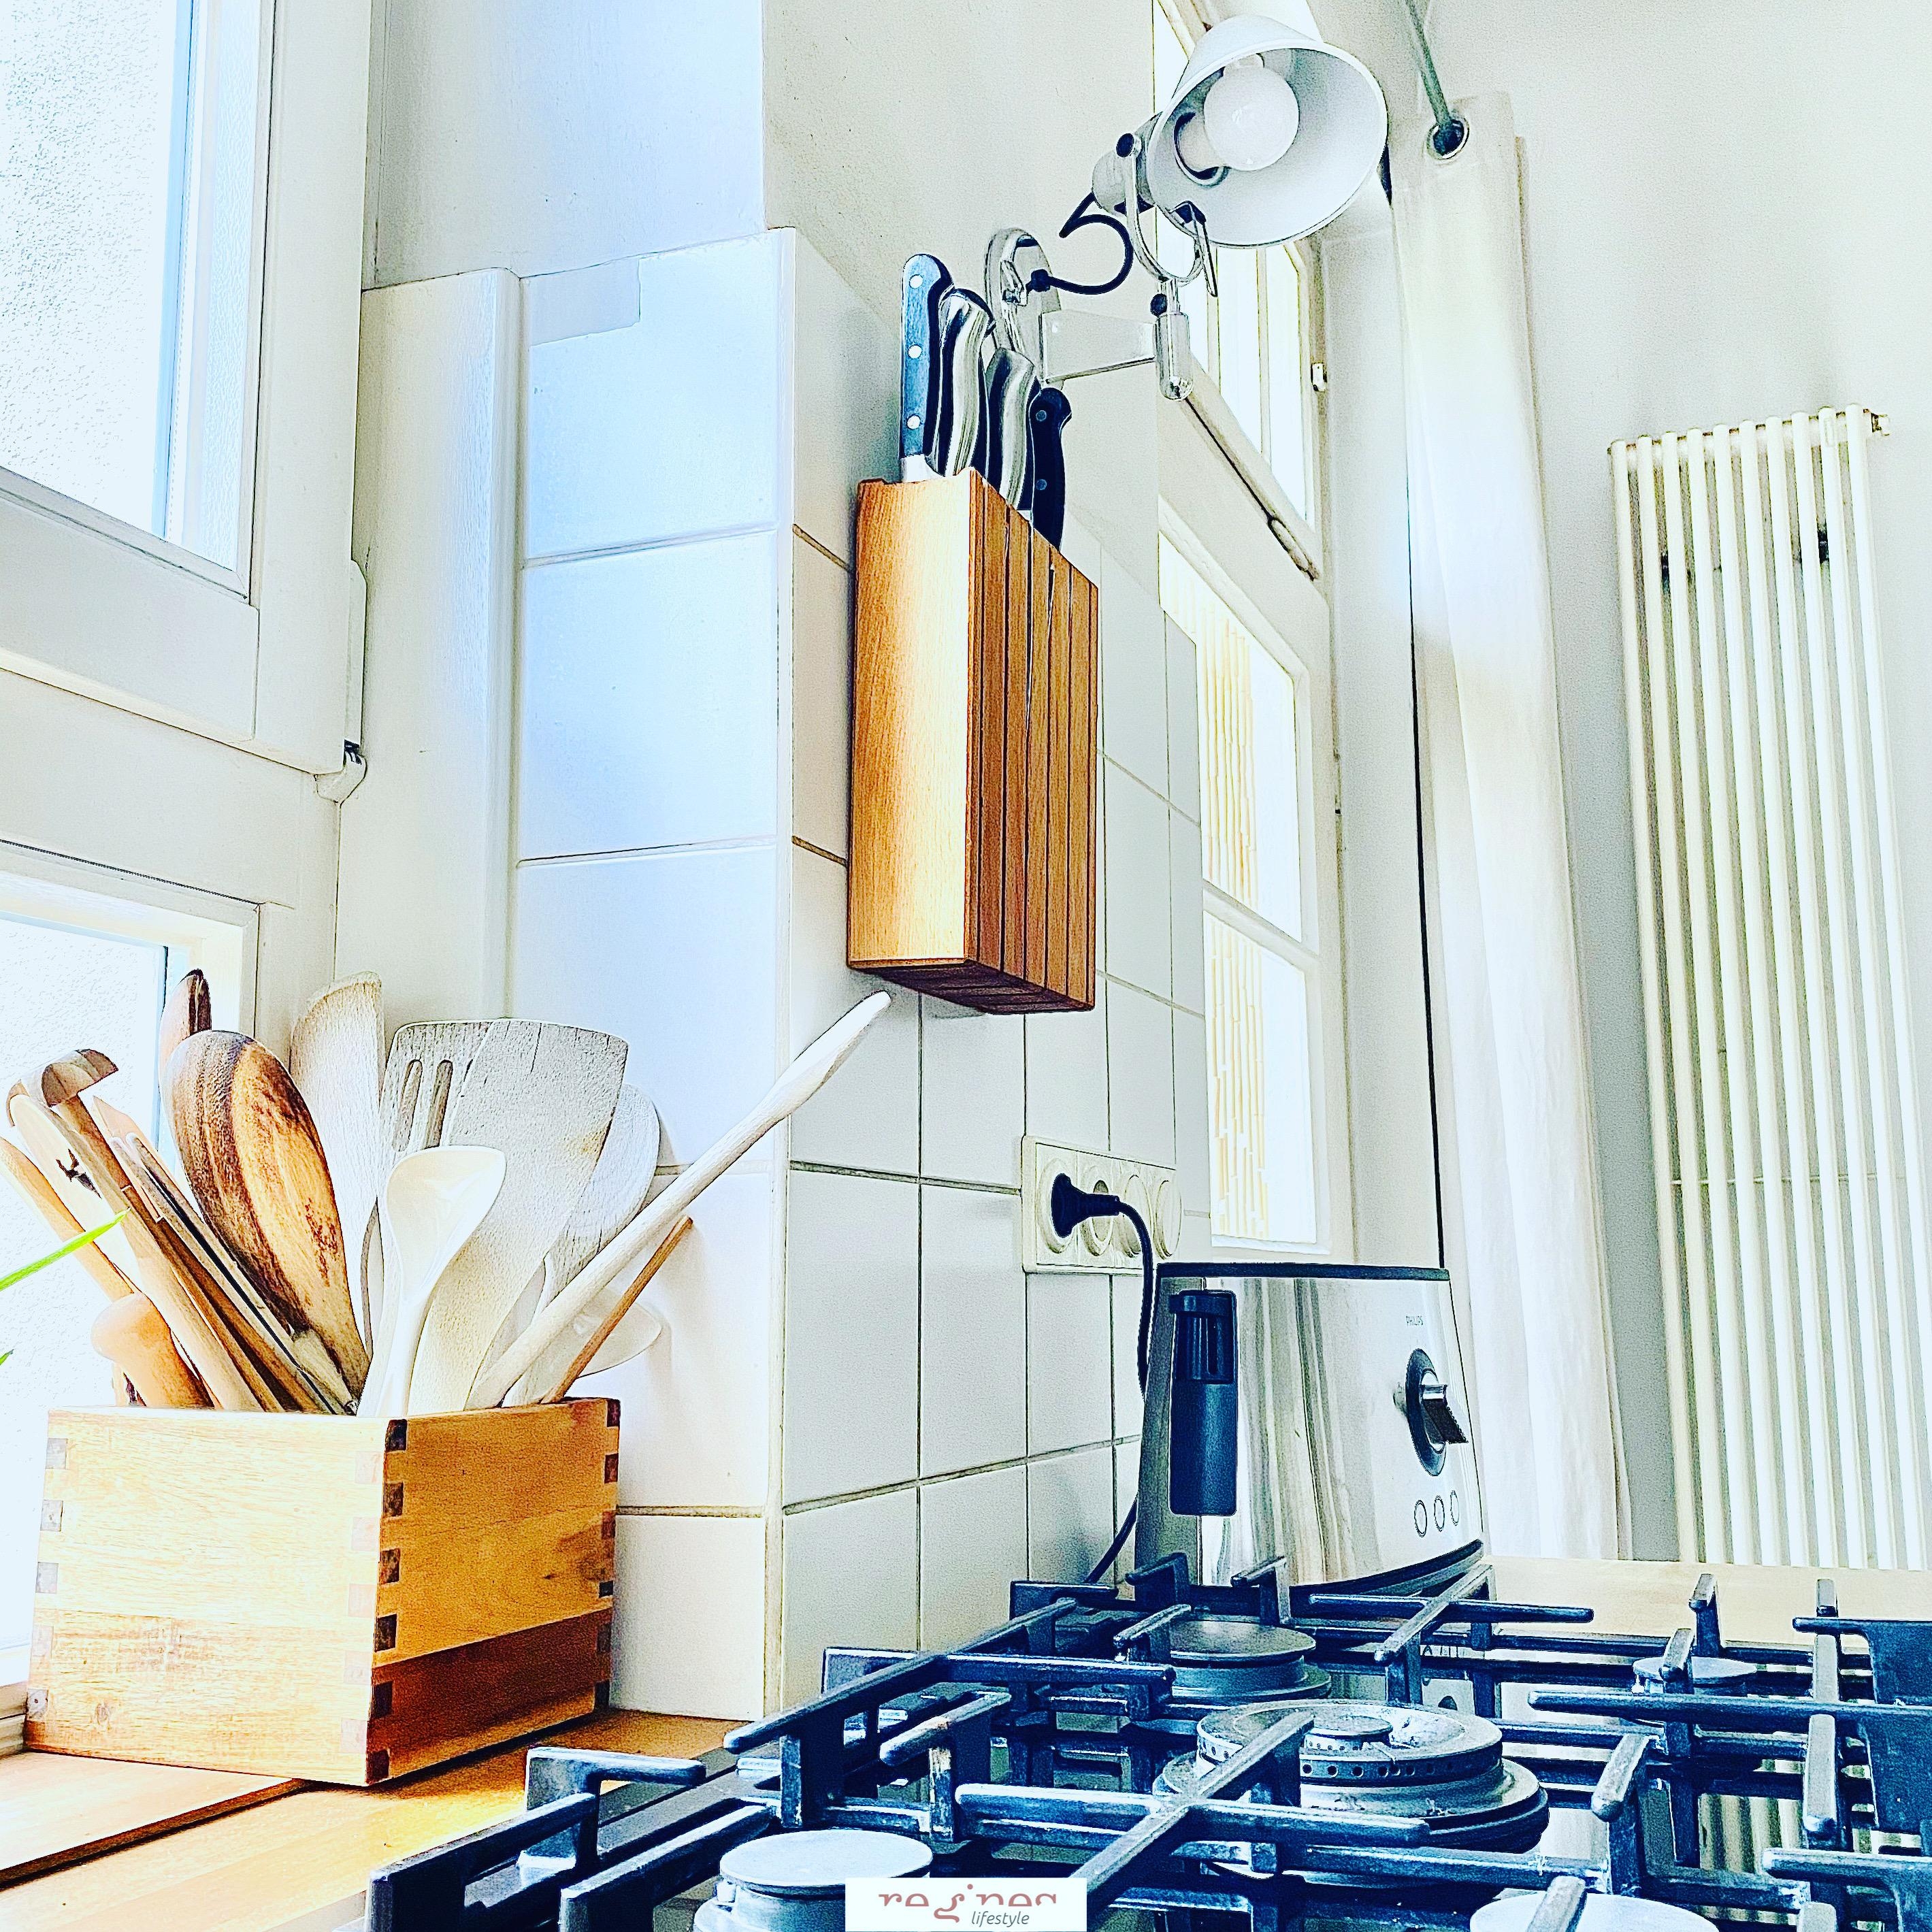 kleiner Einblick in unsere Küchenecke ...
#kitchen #gasherd #altbau #küchenliebe #messerblock #küche 